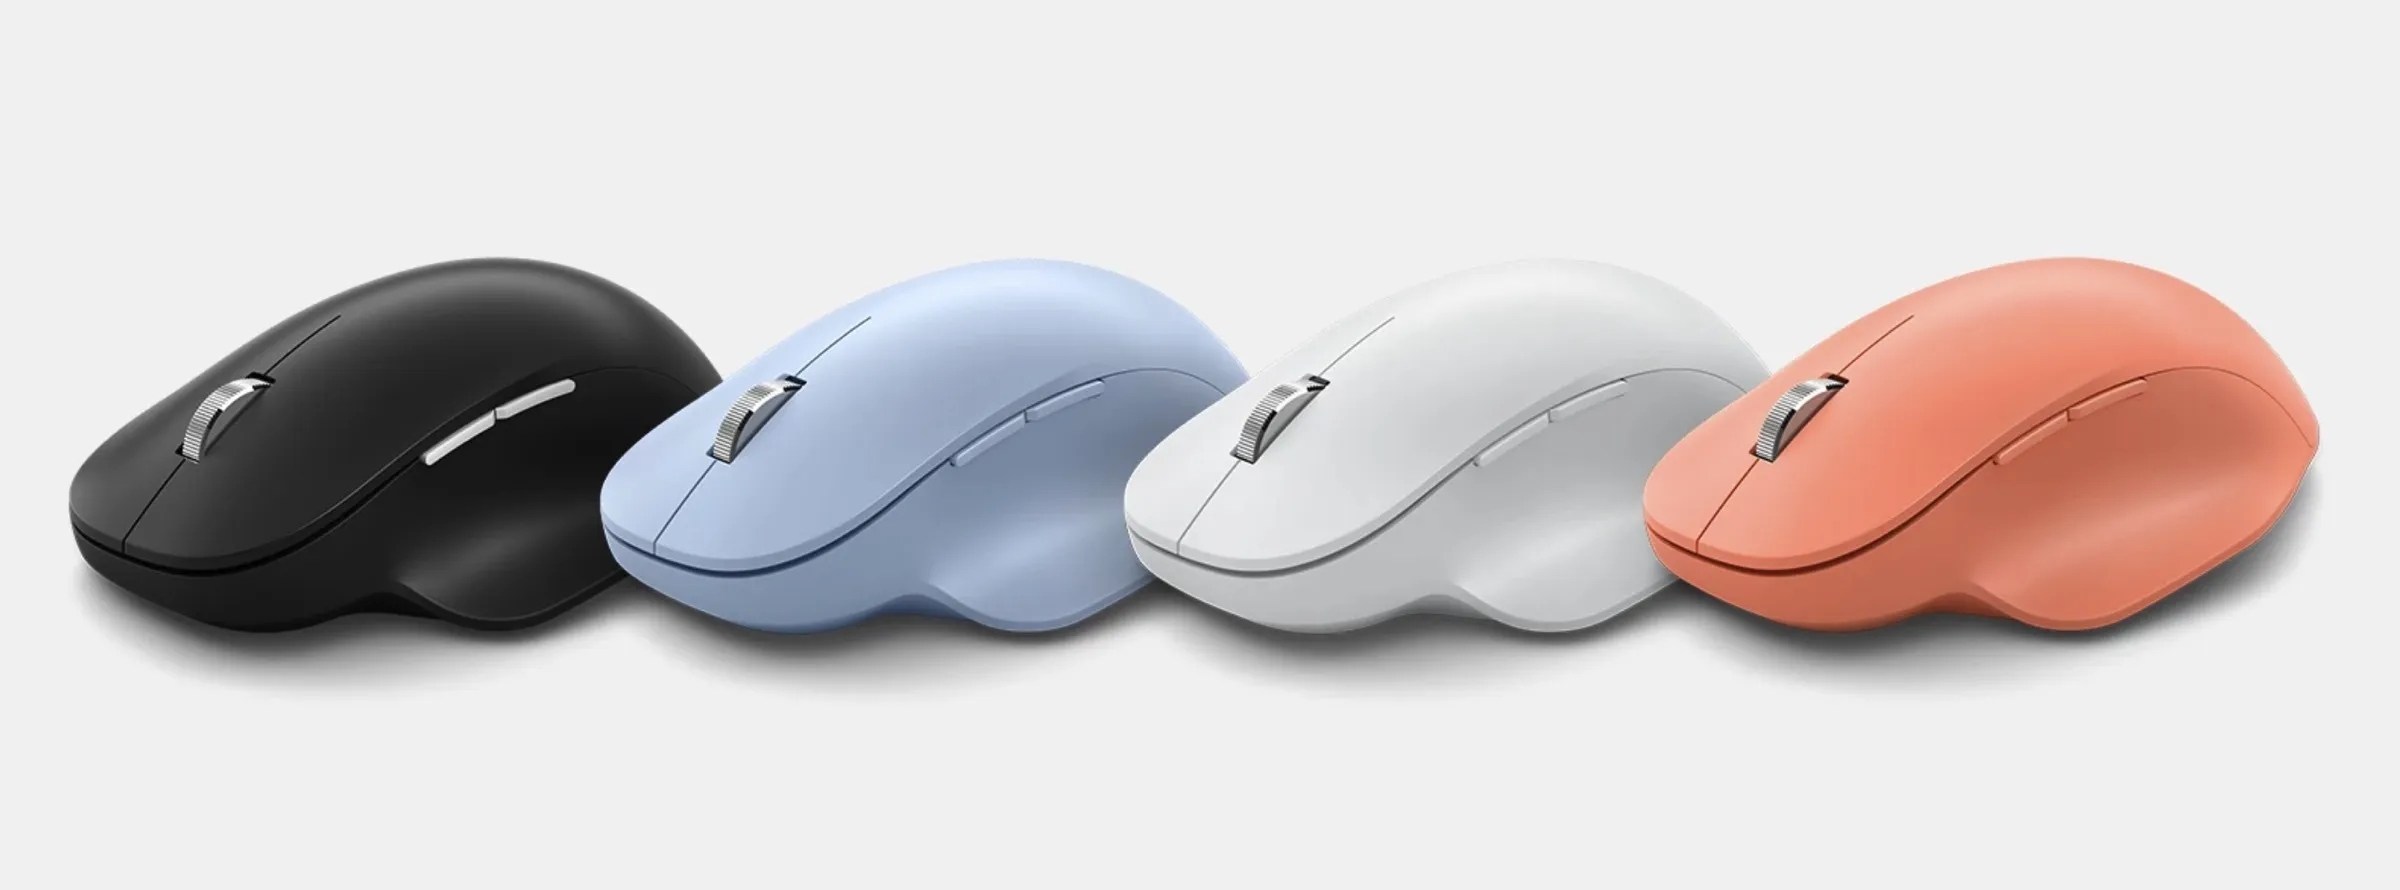 Opciones de color del mouse inalámbrico ergonómico Bluetooth de Microsoft